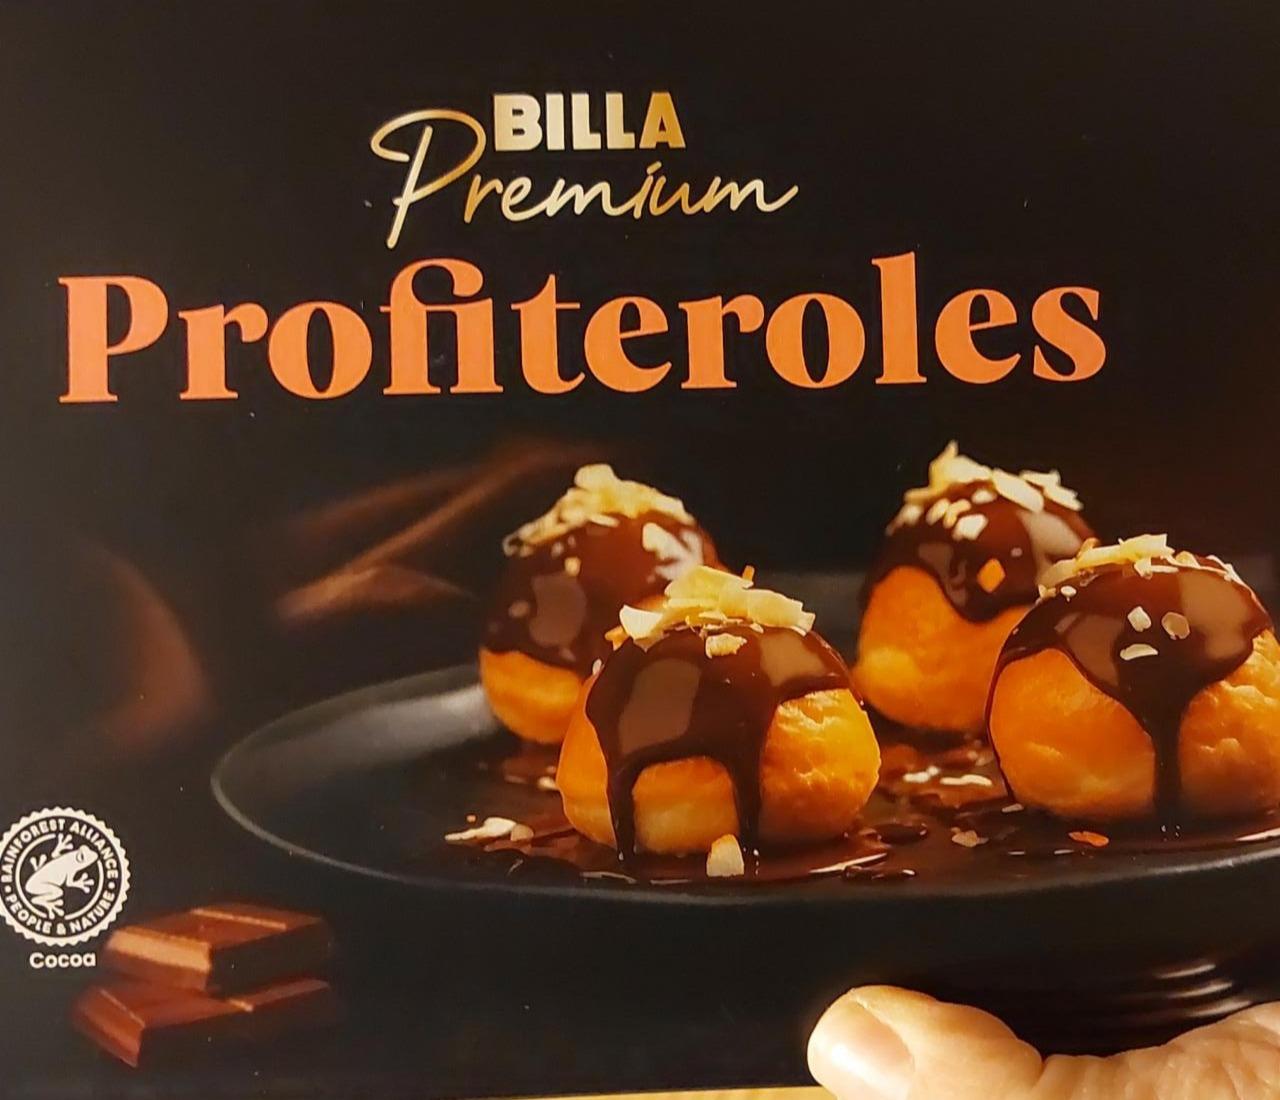 Fotografie - Profiteroles Billa Premium